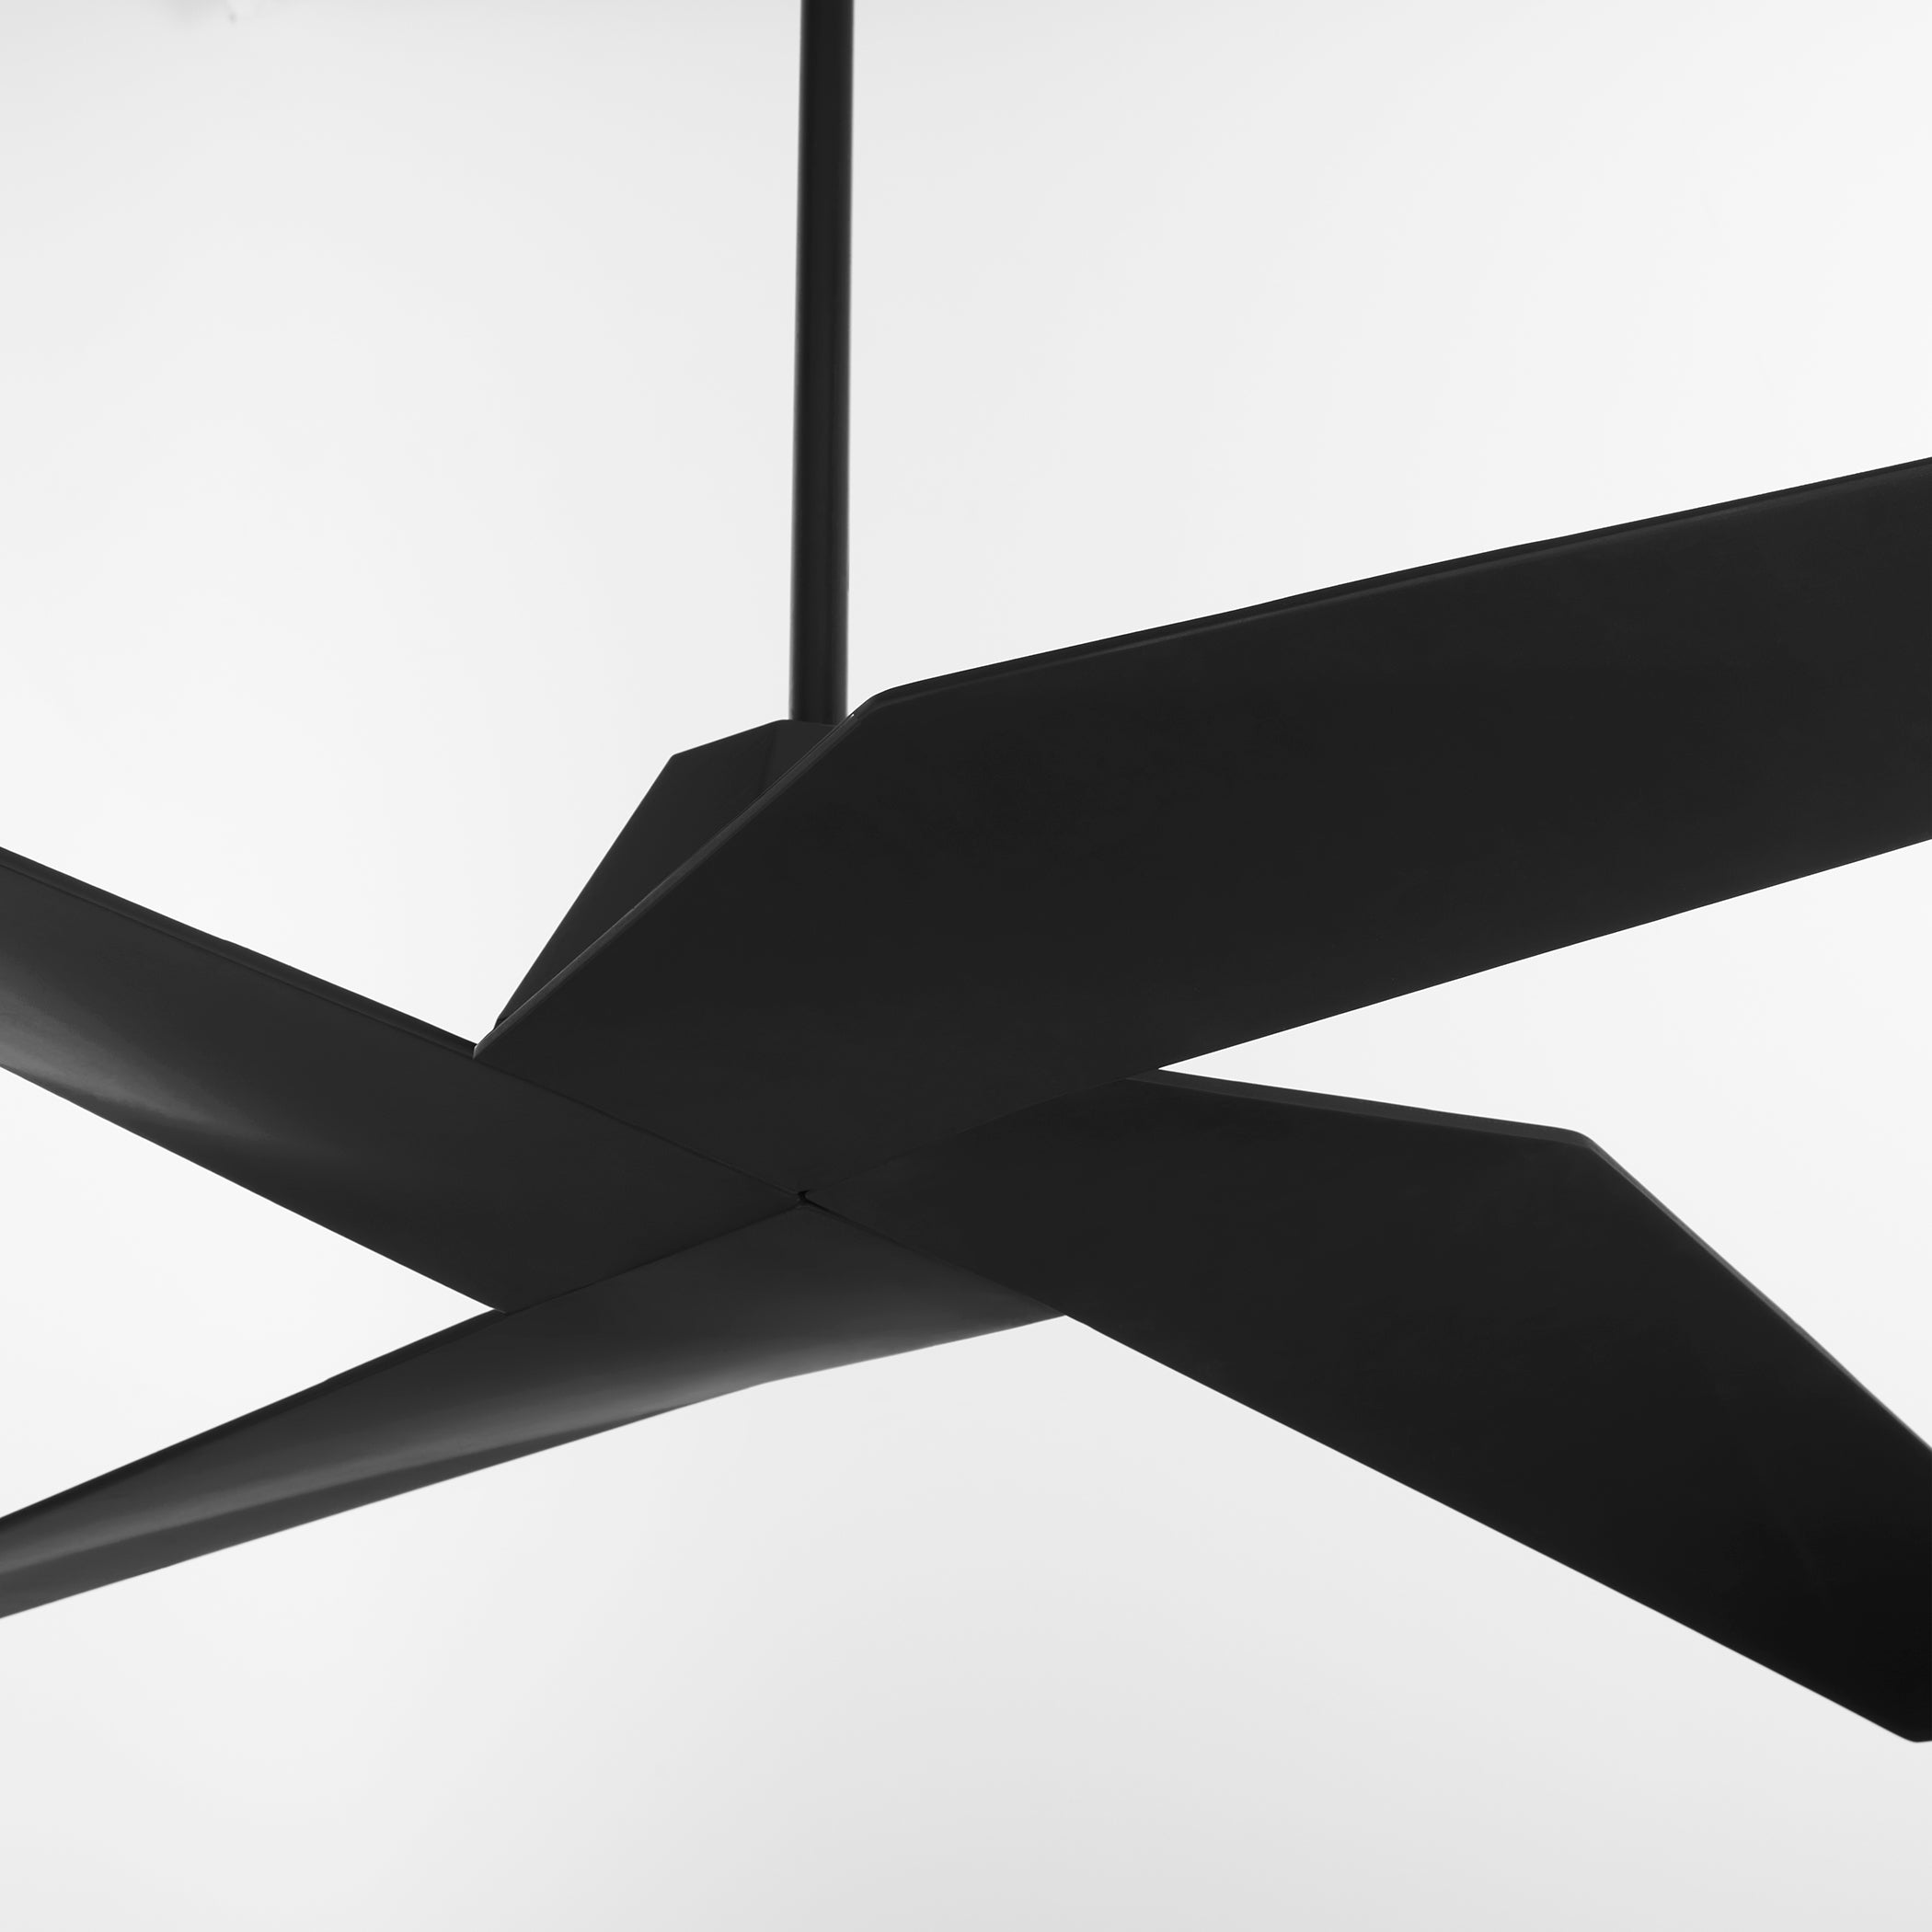 Oxygen METHOD 3-126-15 60 Inch Wet Rated Modern Ceiling Fan – Black